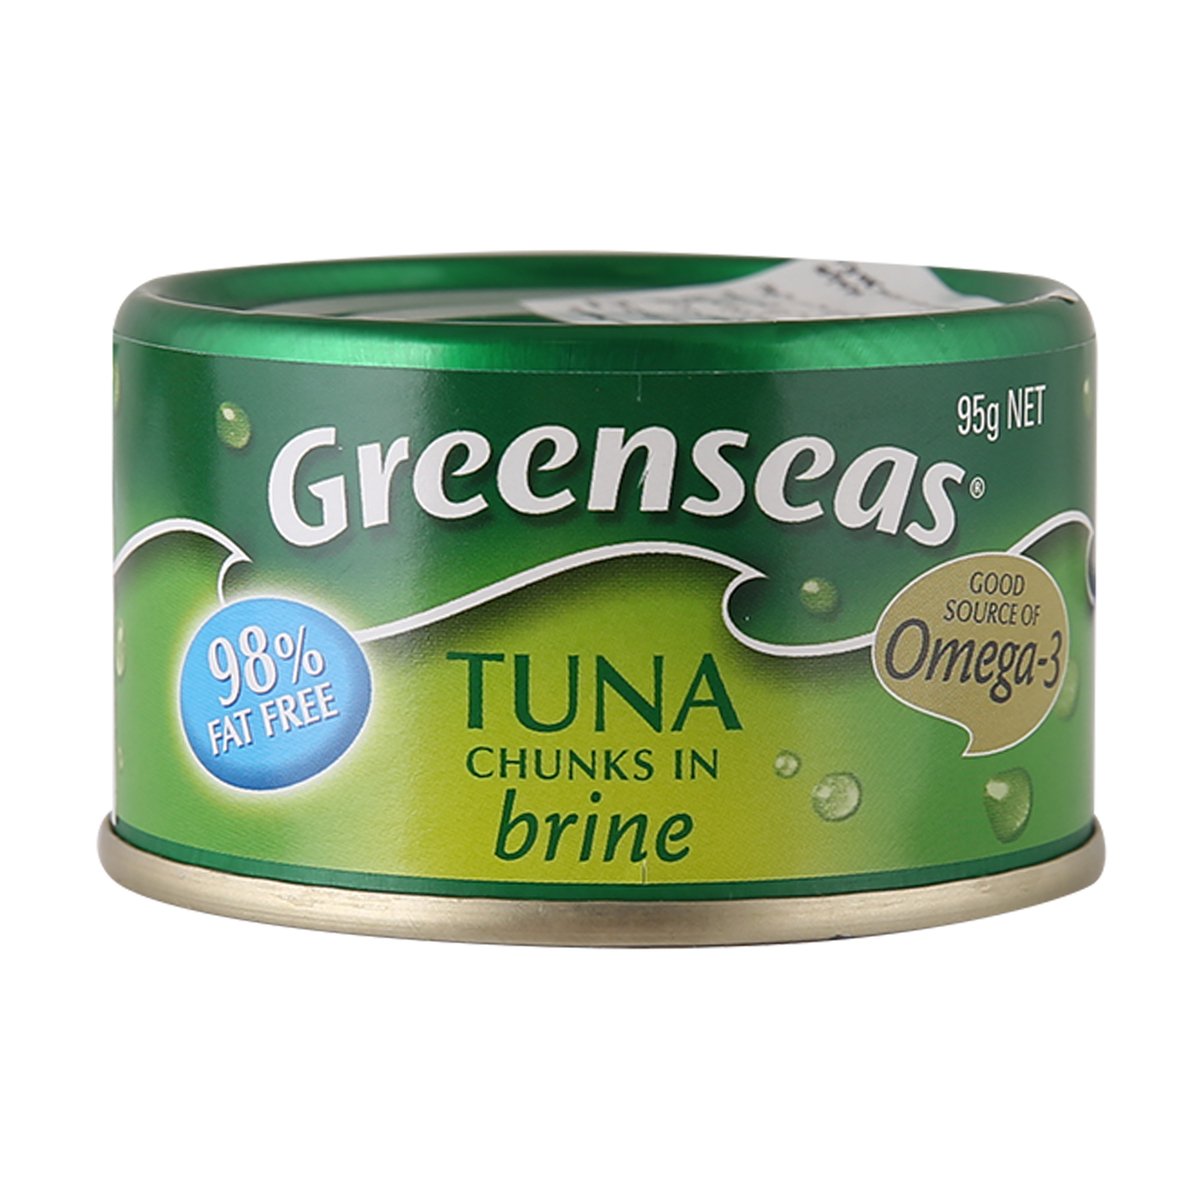 Greenseas Tuna Chunks in Brine 95g